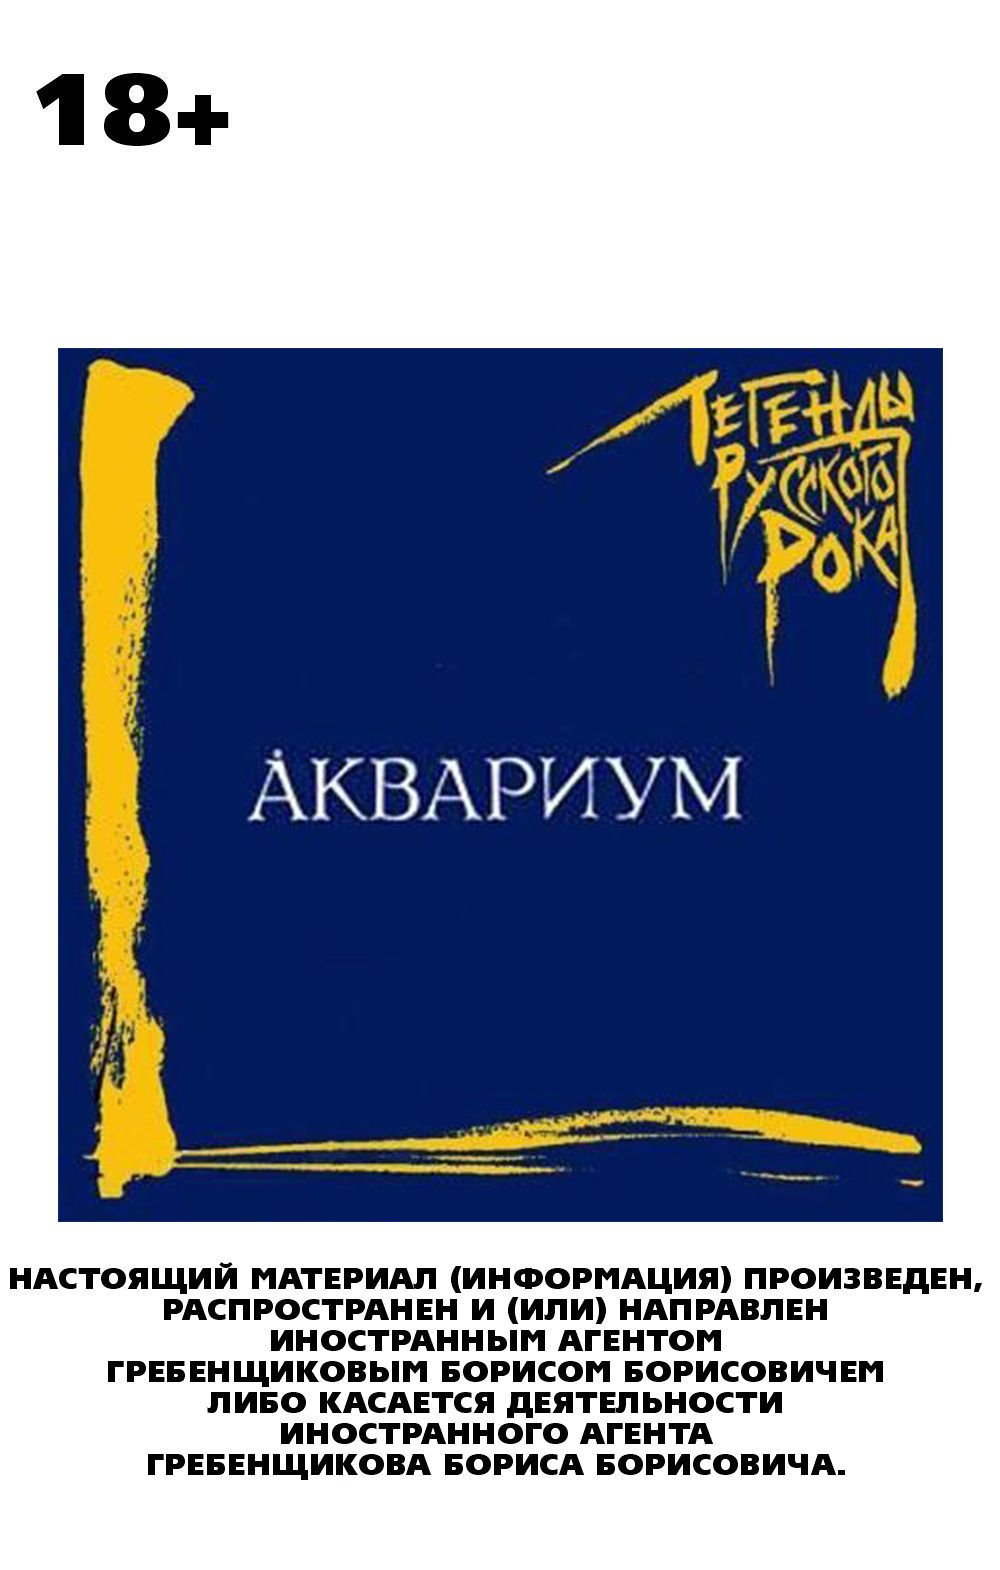 цена Аквариум: Легенды русского рока (CD)